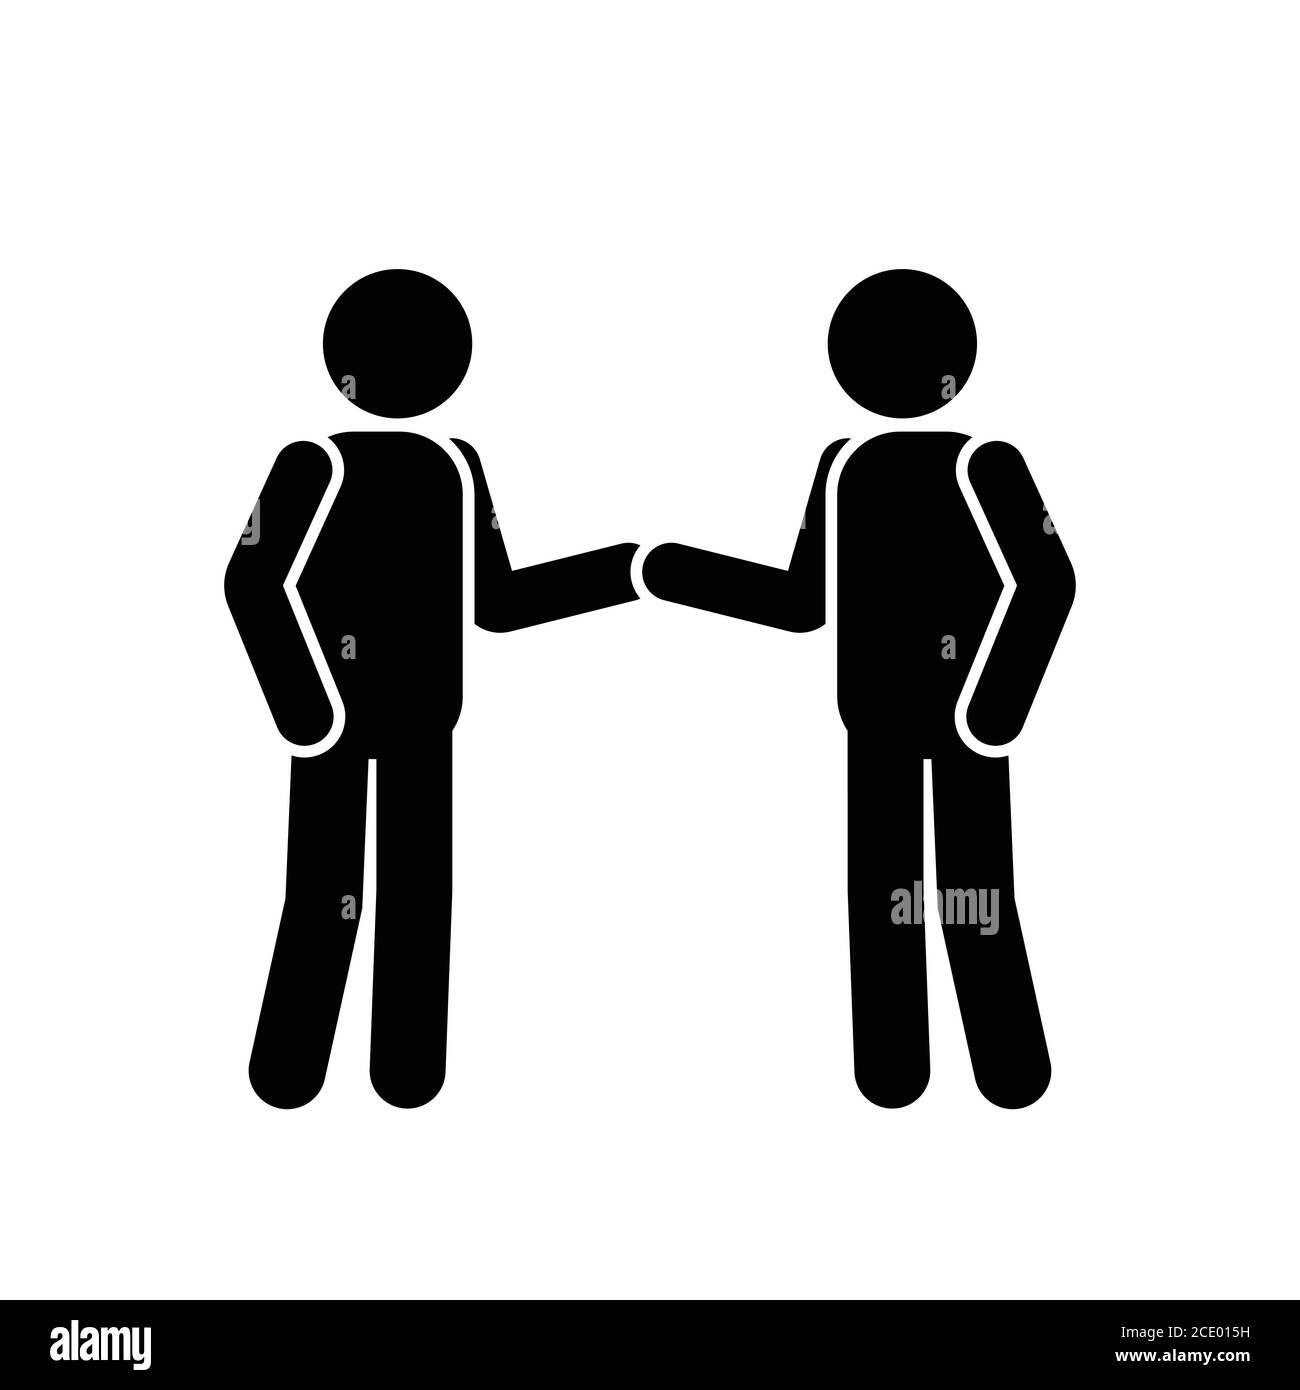 Stick Figur Handshake. Piktogramm, das zwei Männer zeigt, die sich die Hände schütteln. Schwarz-Weiß-EPS-Vektor. Stock Vektor